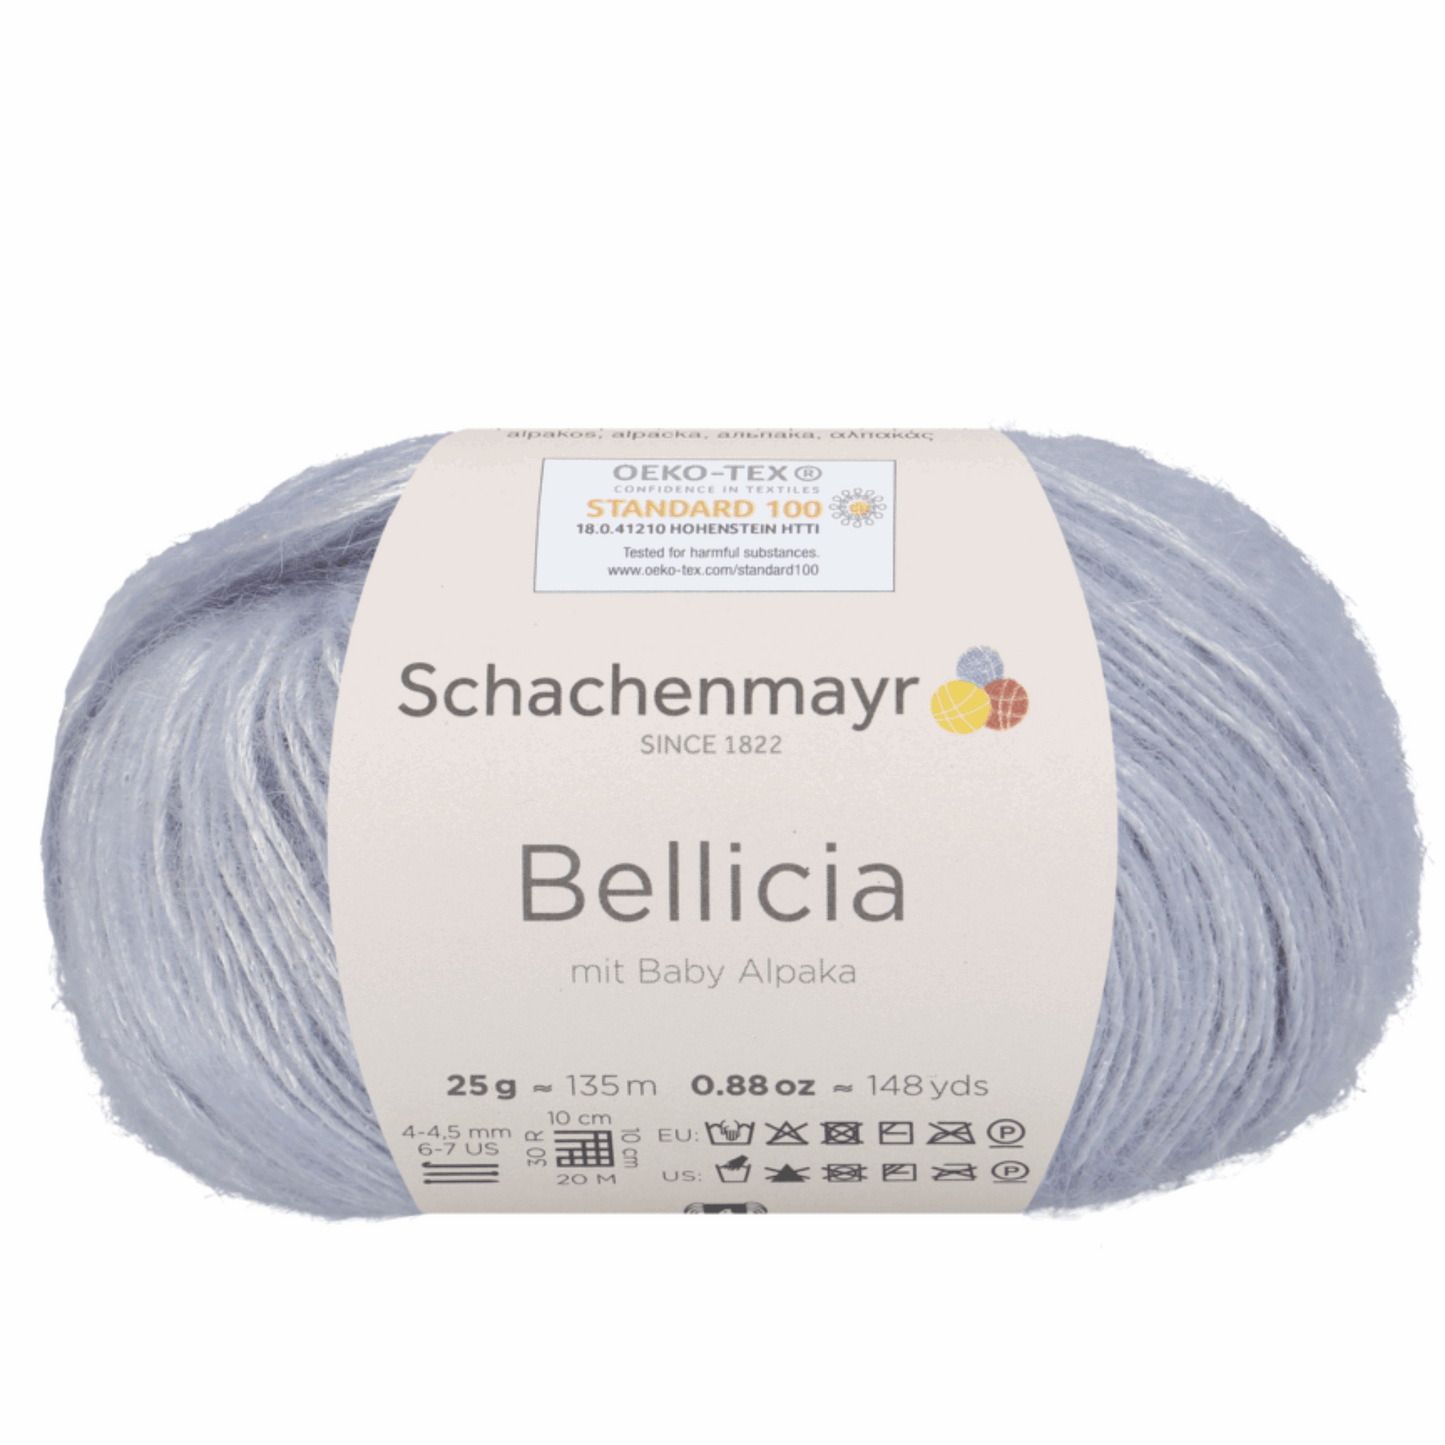 Schachenmayr Bellicia 25g, 97005, color silver 90